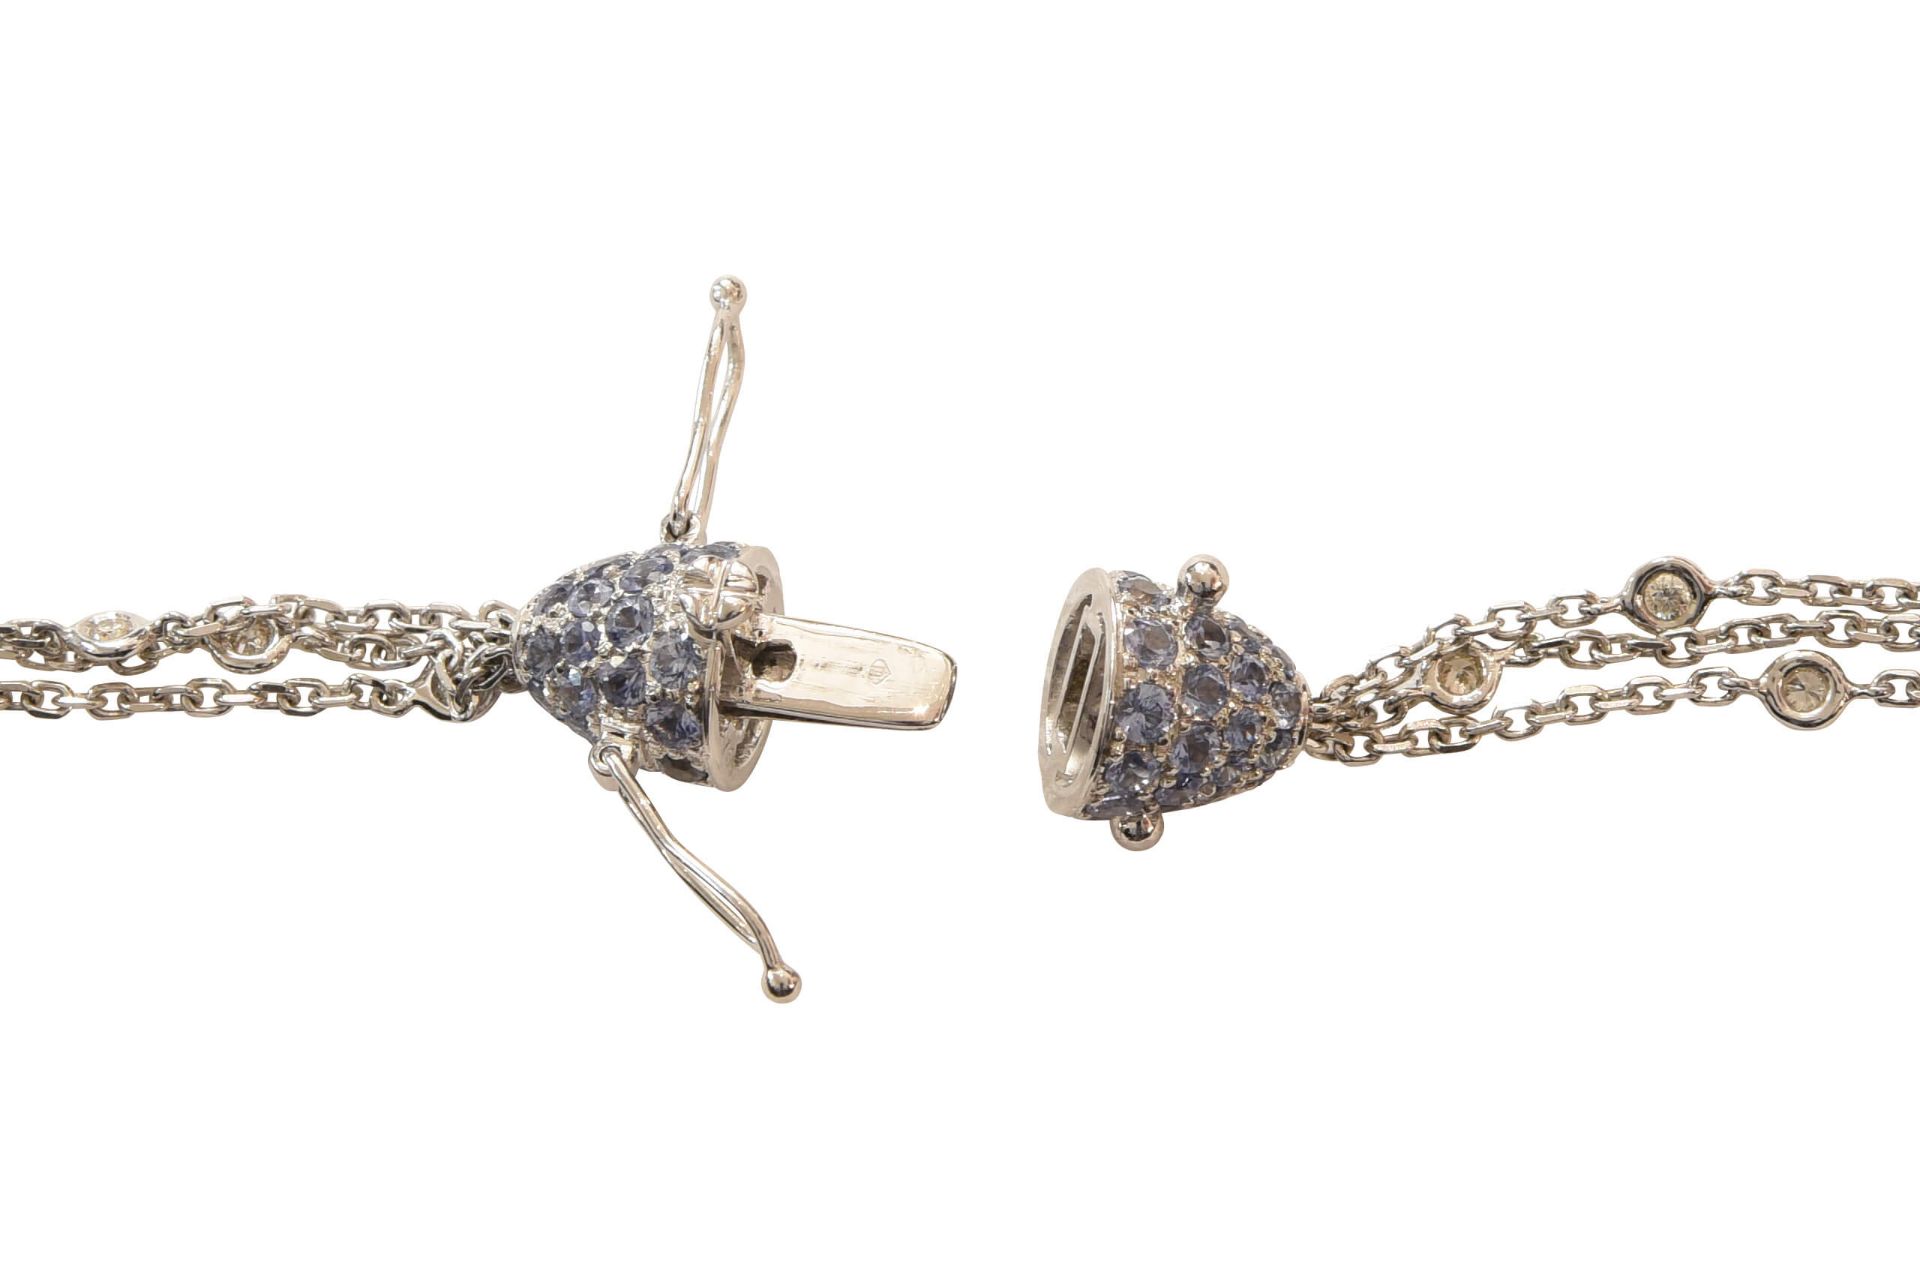 Collier WG mit Brillanten, Saphire, und Perlen|Necklace with Diamonds, Sapphires, & Pearls - Image 5 of 6